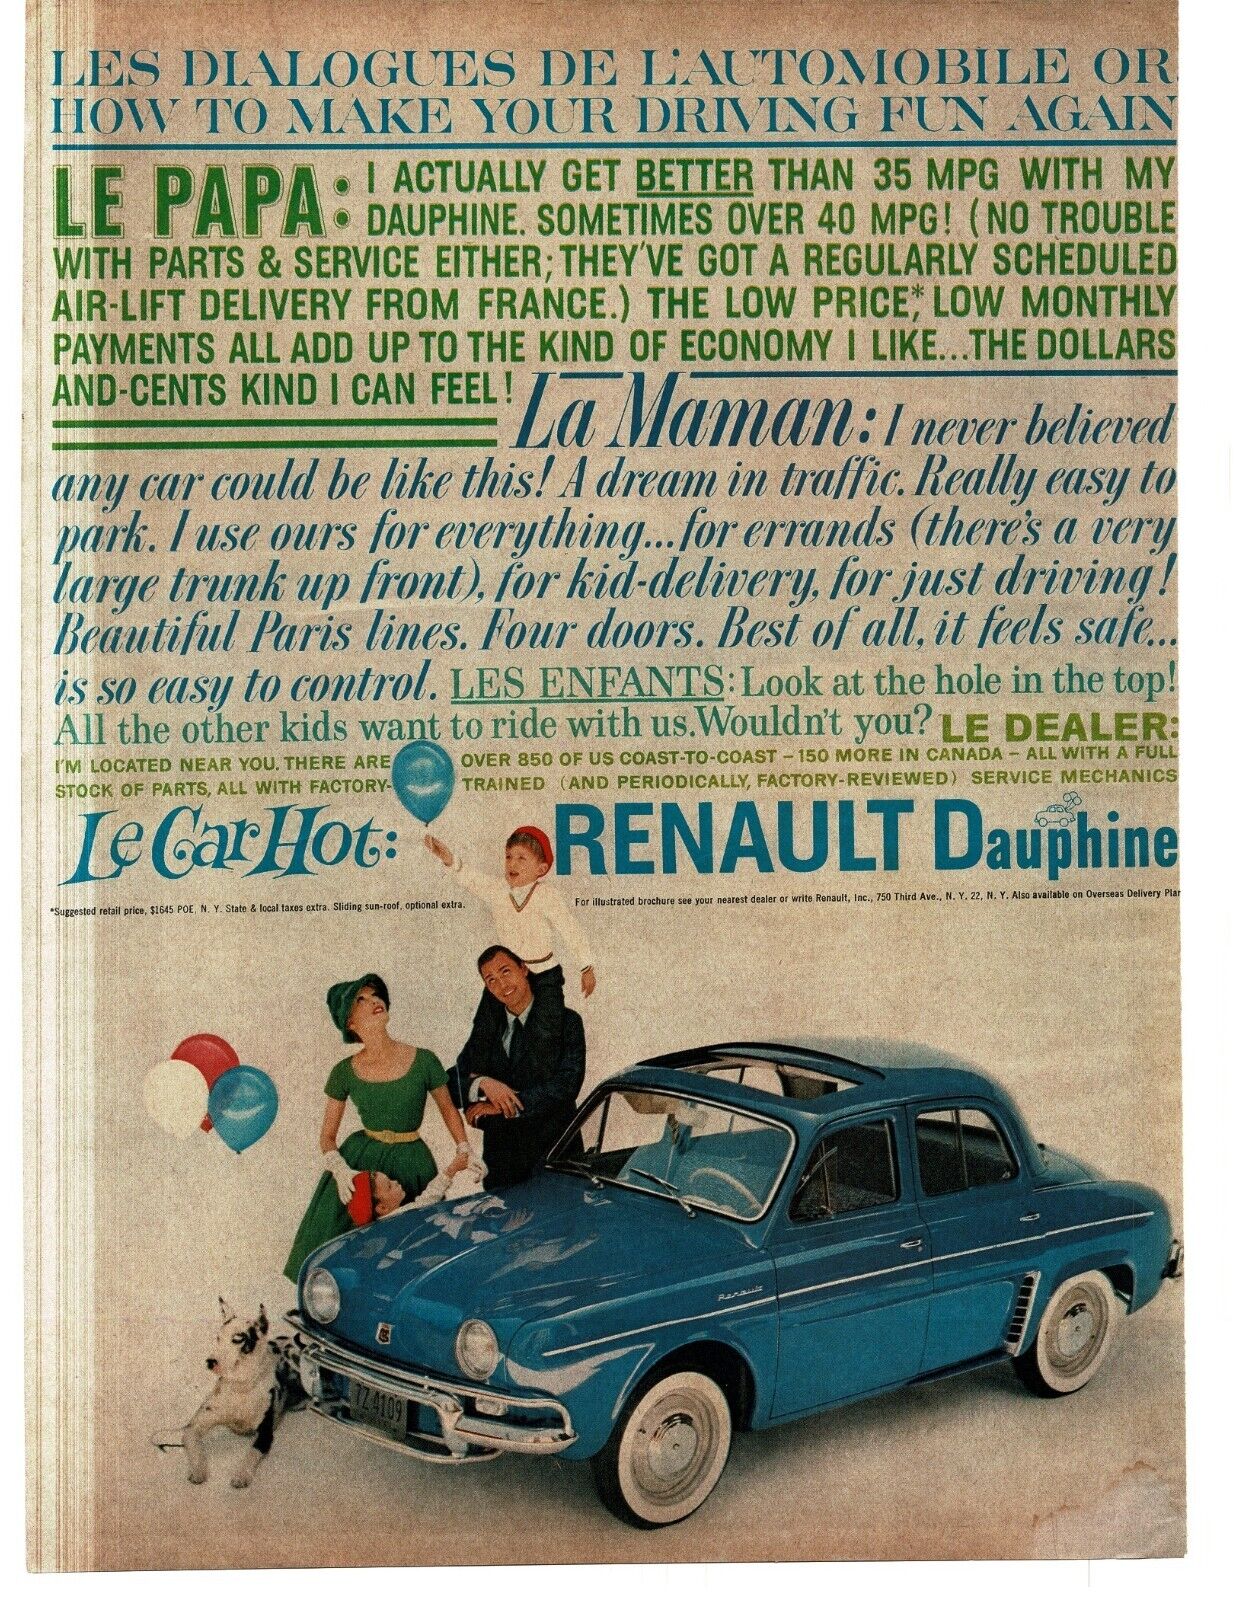 1959 Renault Dauphine Blue 4-door Sedan Le Car Hot Vintage Print Ad